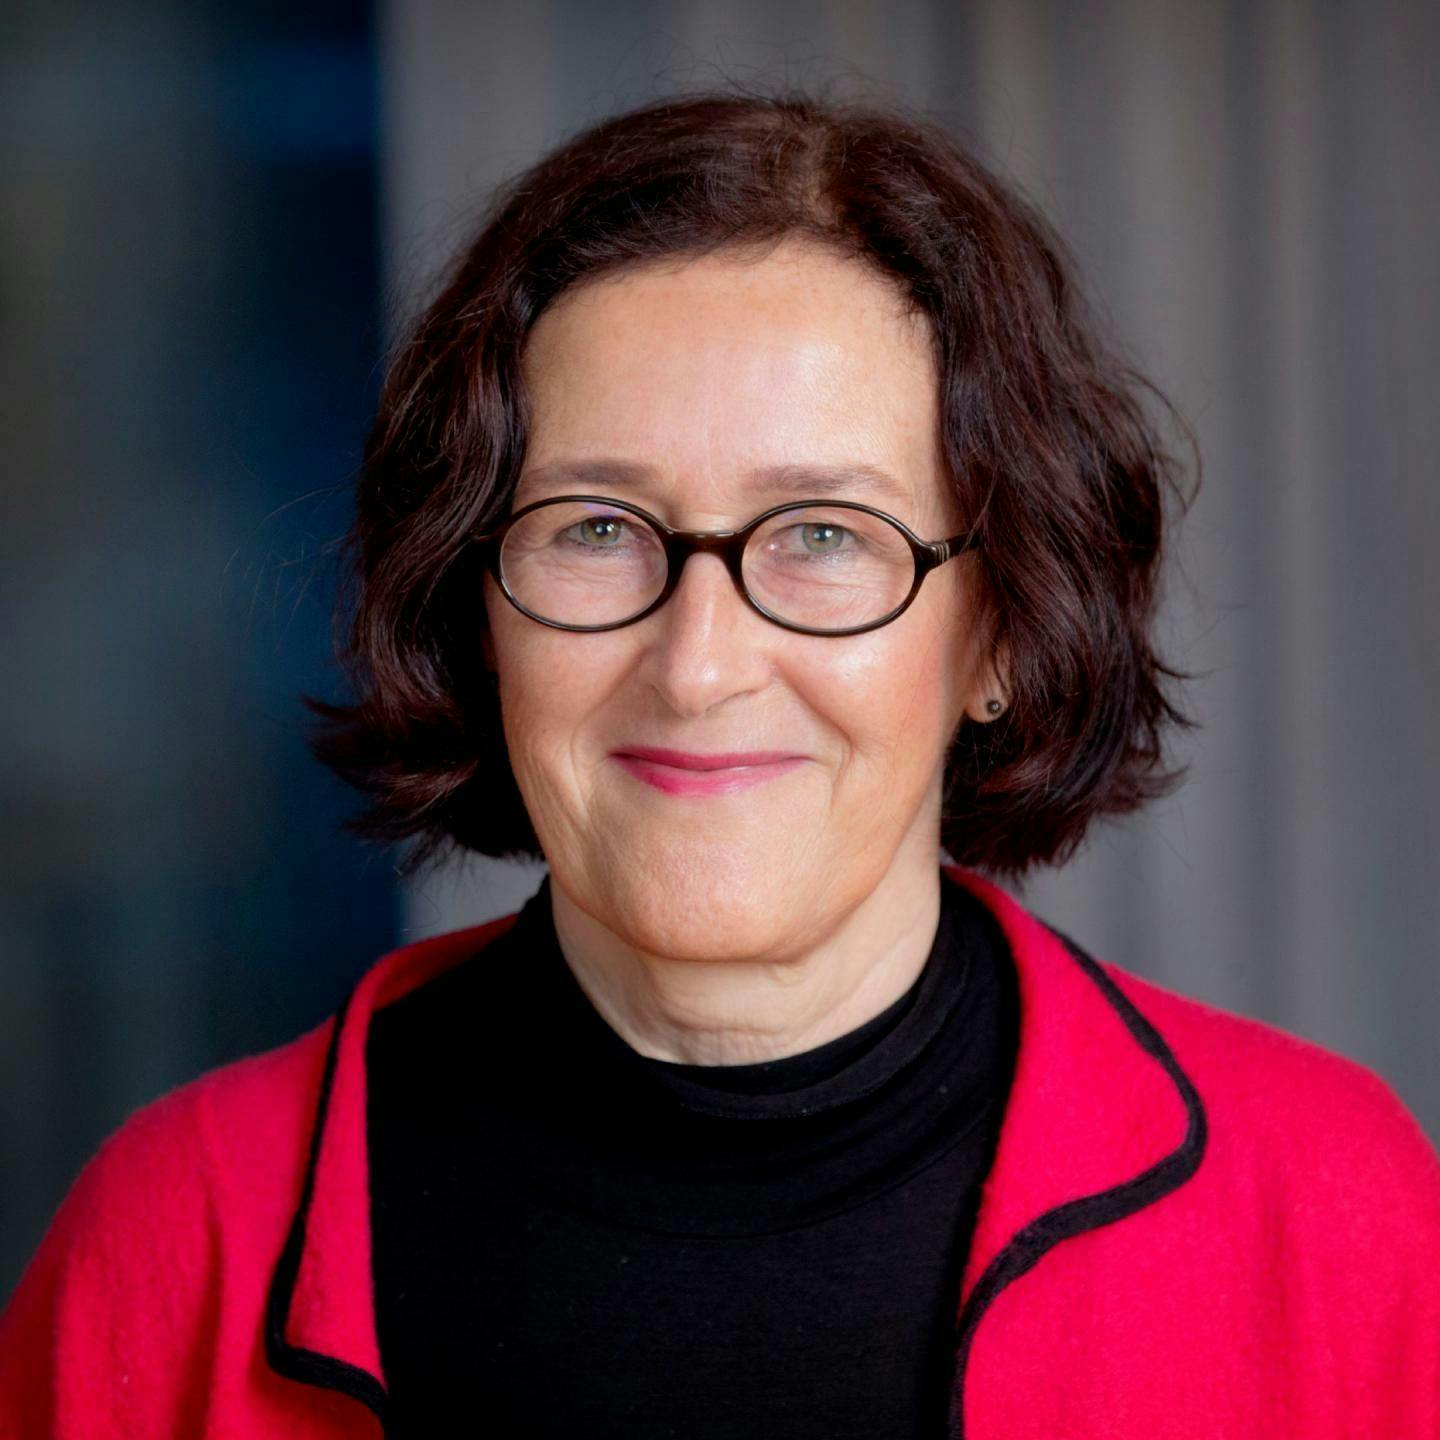 Lena Carlsson Ekander, MD, PhD